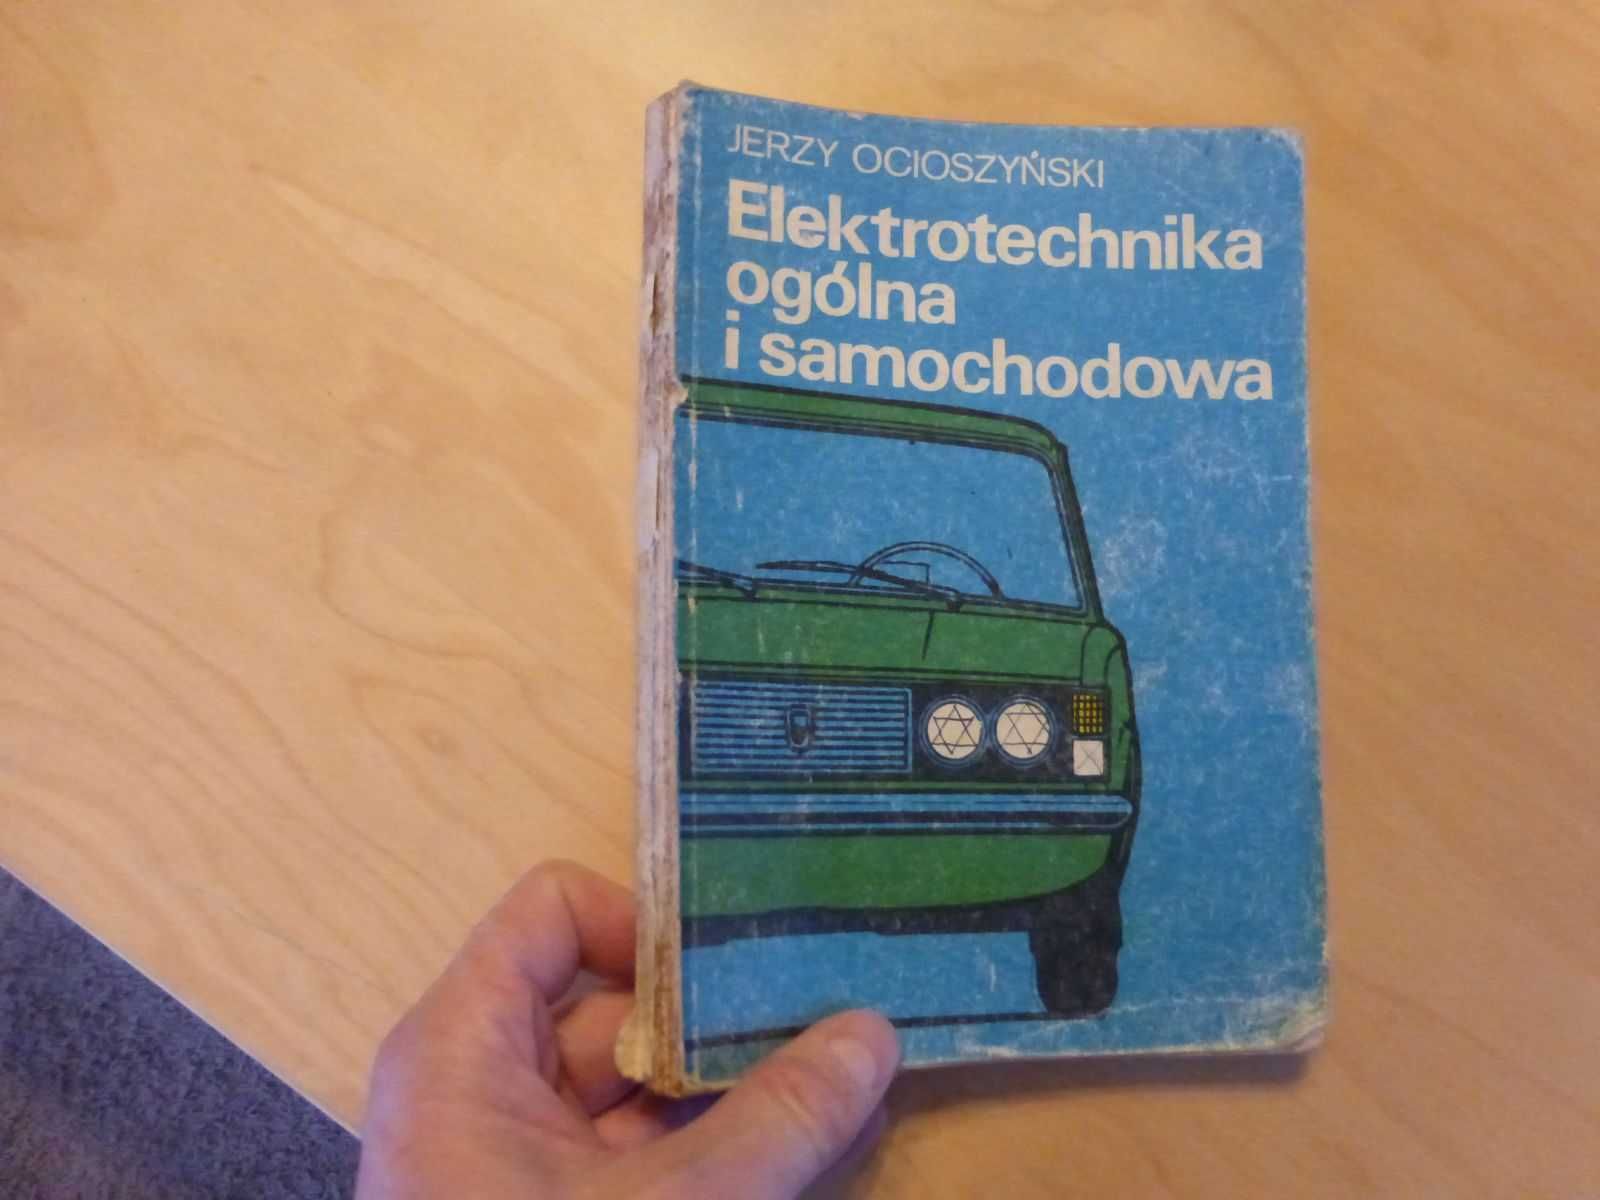 Elektrotechnika ogólna i samochodowa. Jerzy Ocioszyński 1979